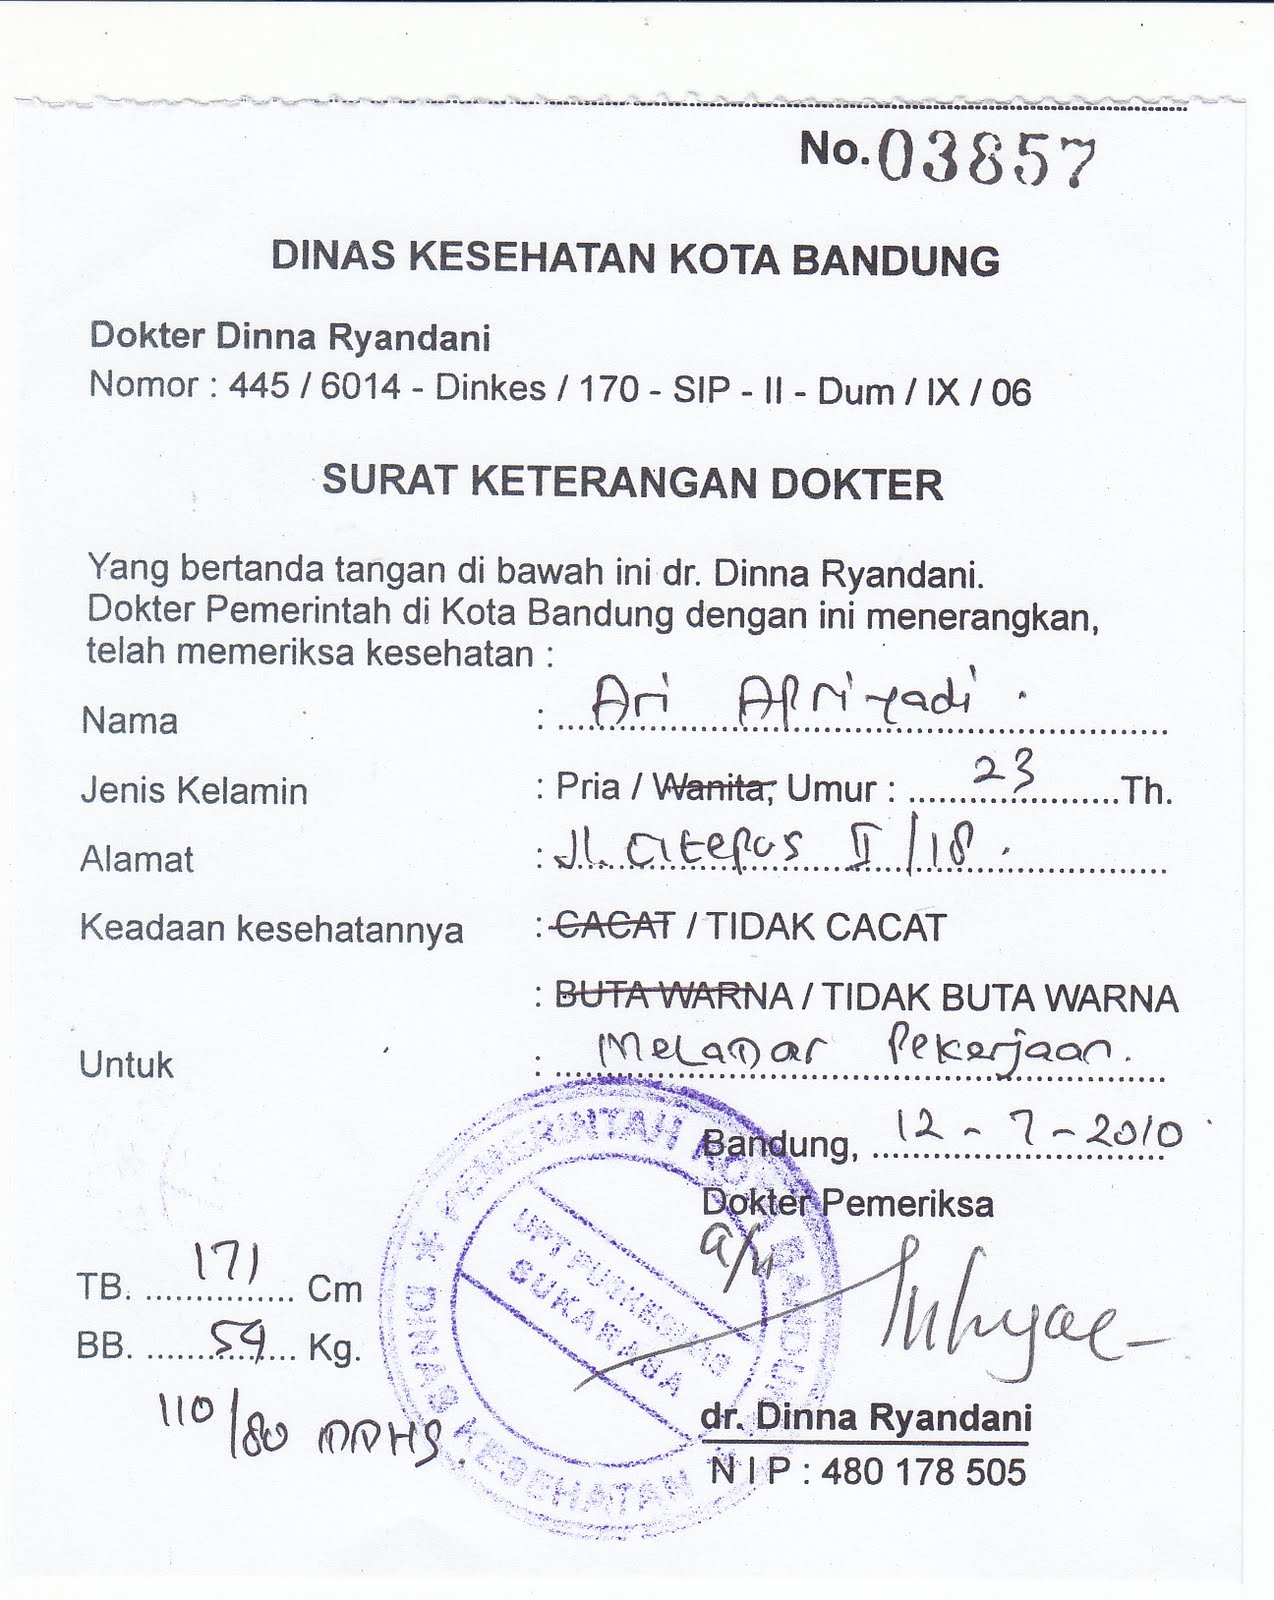 Contoh Surat Dokter Daerah Jakarta Contoh Surat